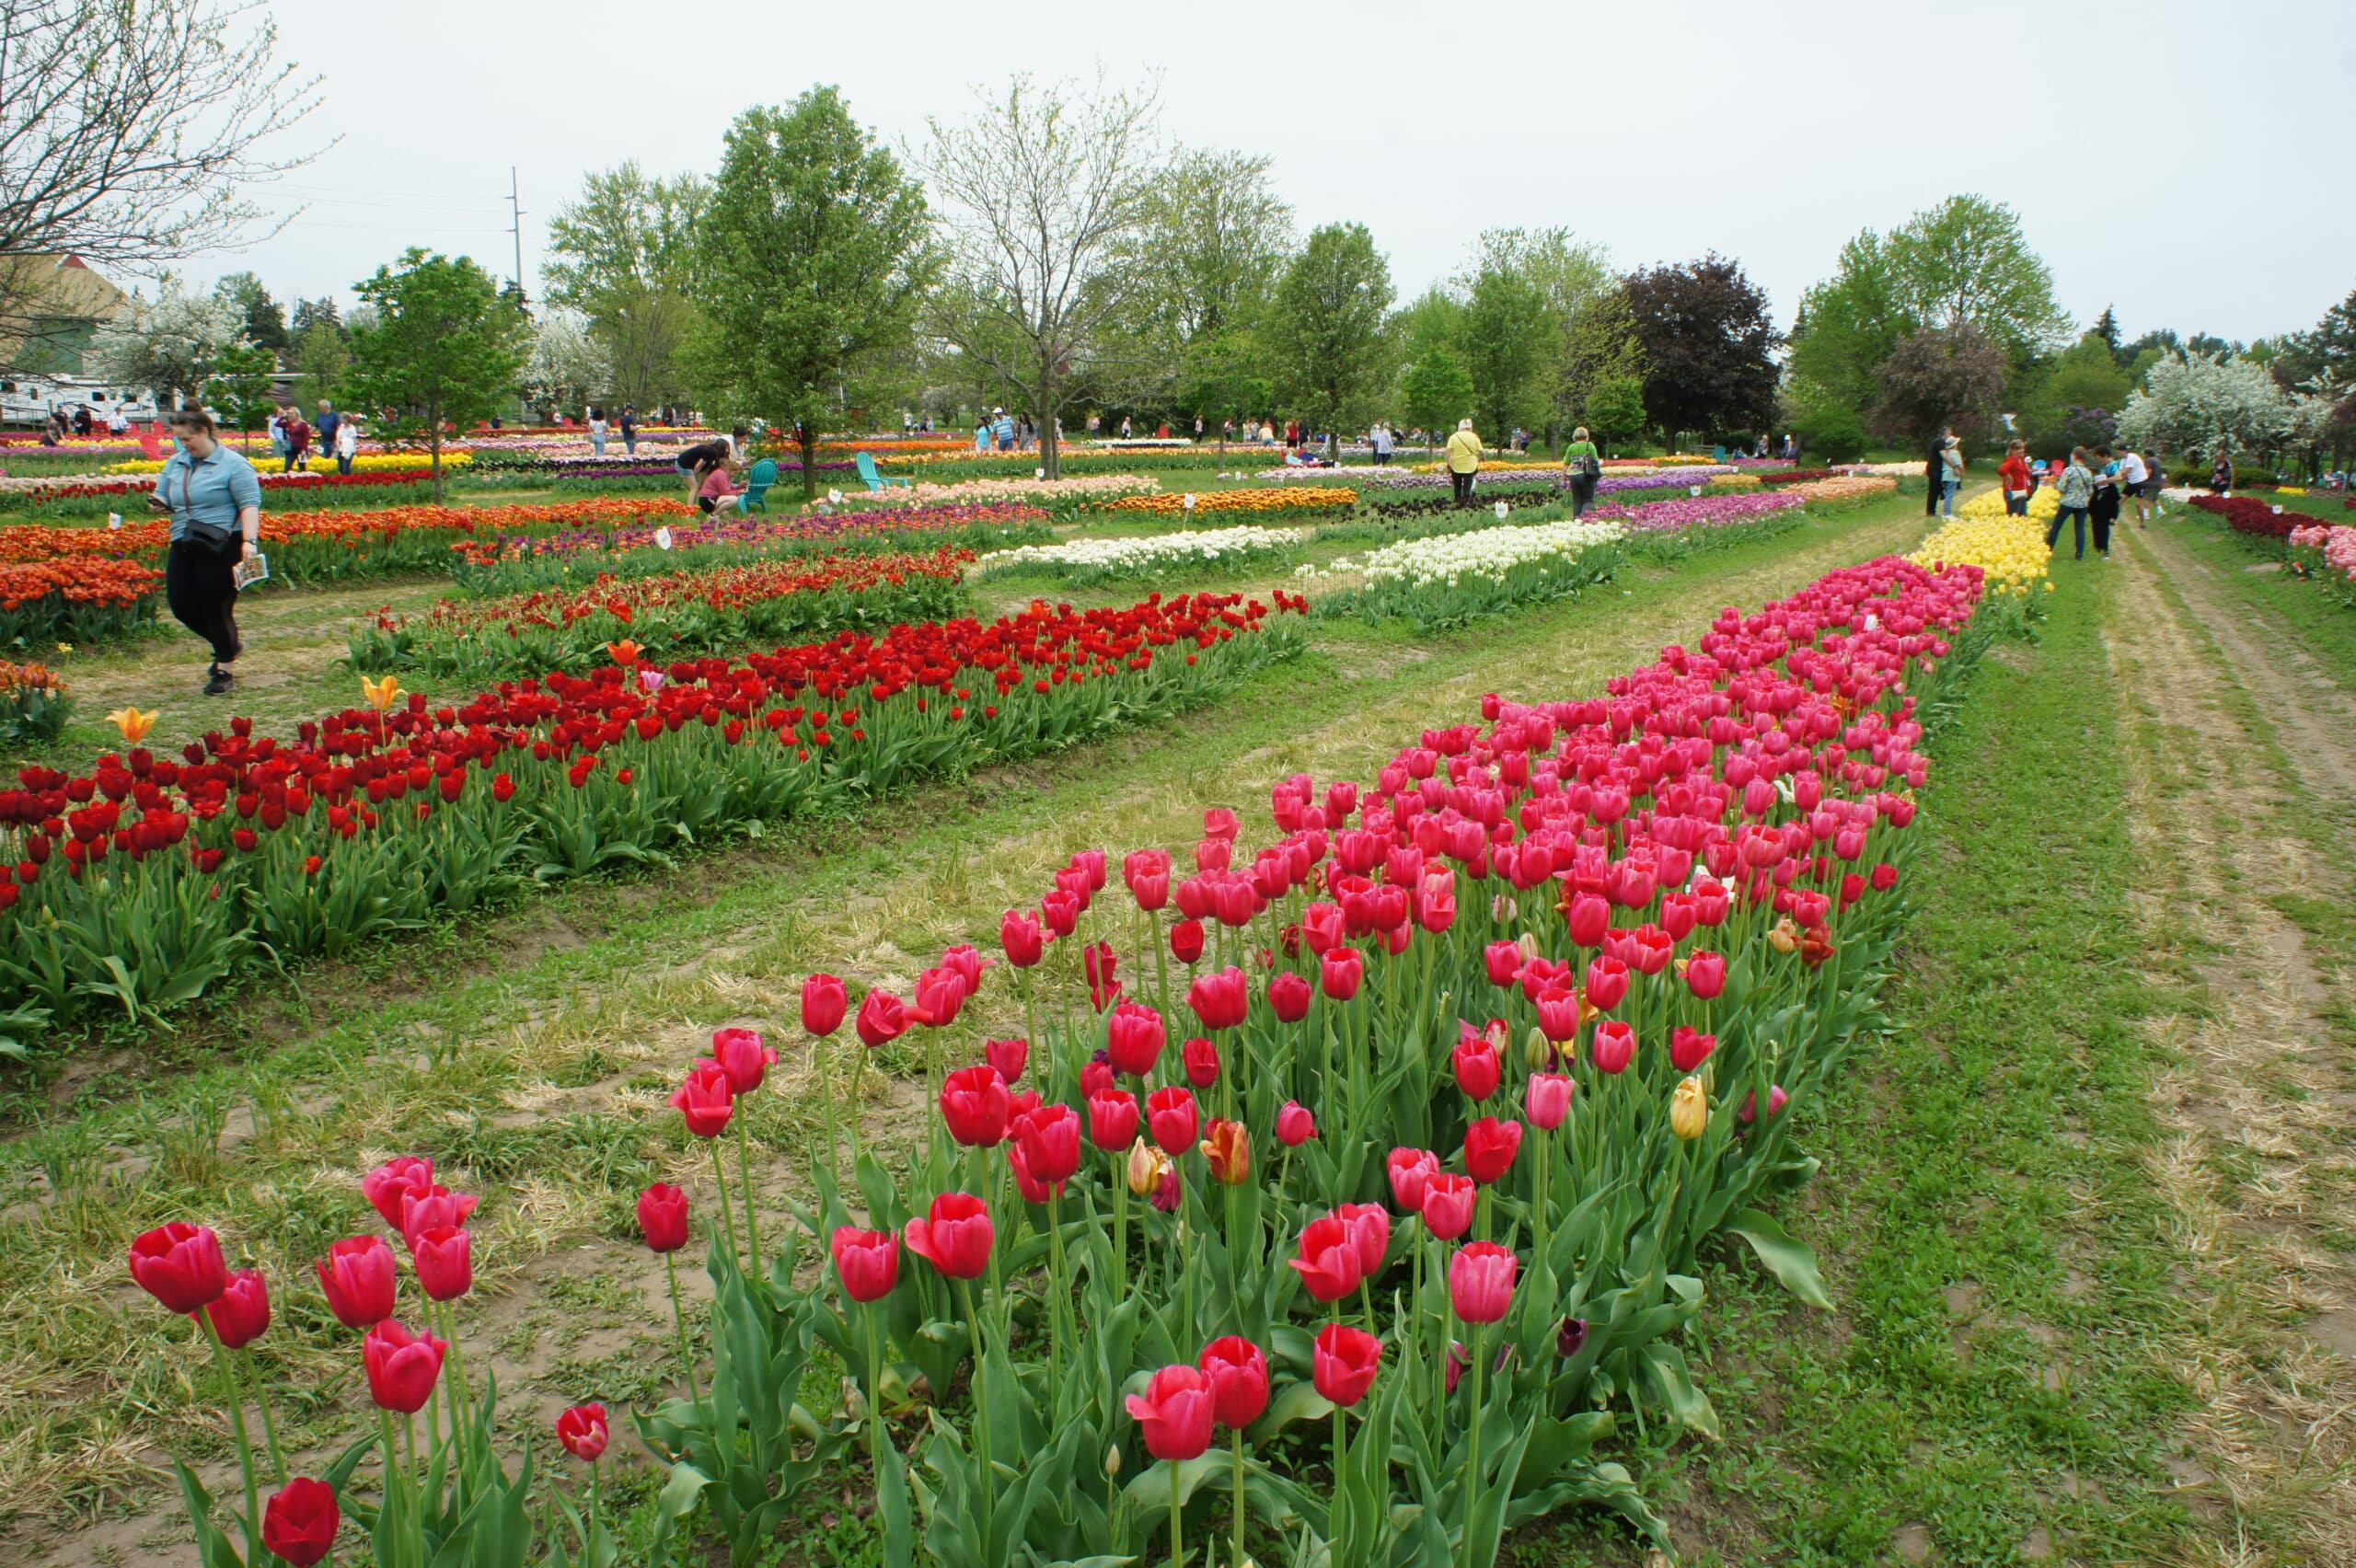 Veldheer Gardens